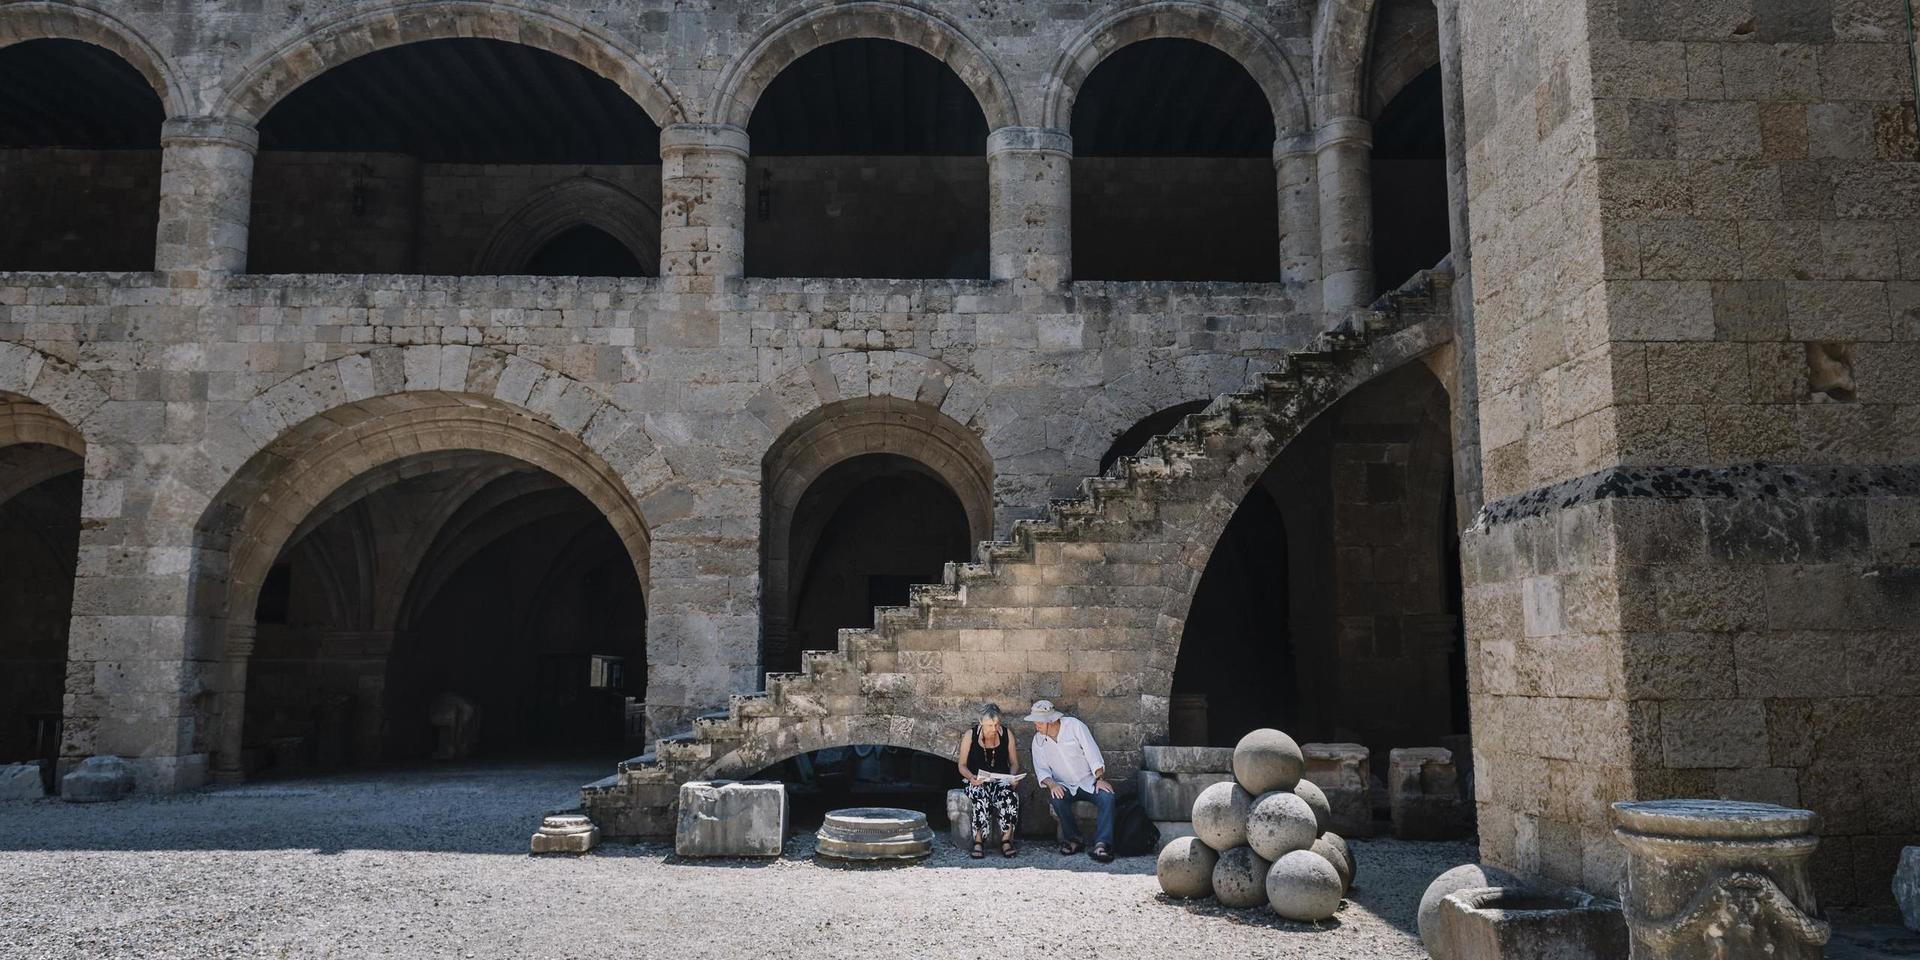 Arkeologiska museet i Rhodos stad har haft öppet sedan mitten av juni. Men de två första veckorna kom främst grekiska besökare. De senaste dagarna har de utländska turisterna börjat komma, men bara 10-15 om dagen.